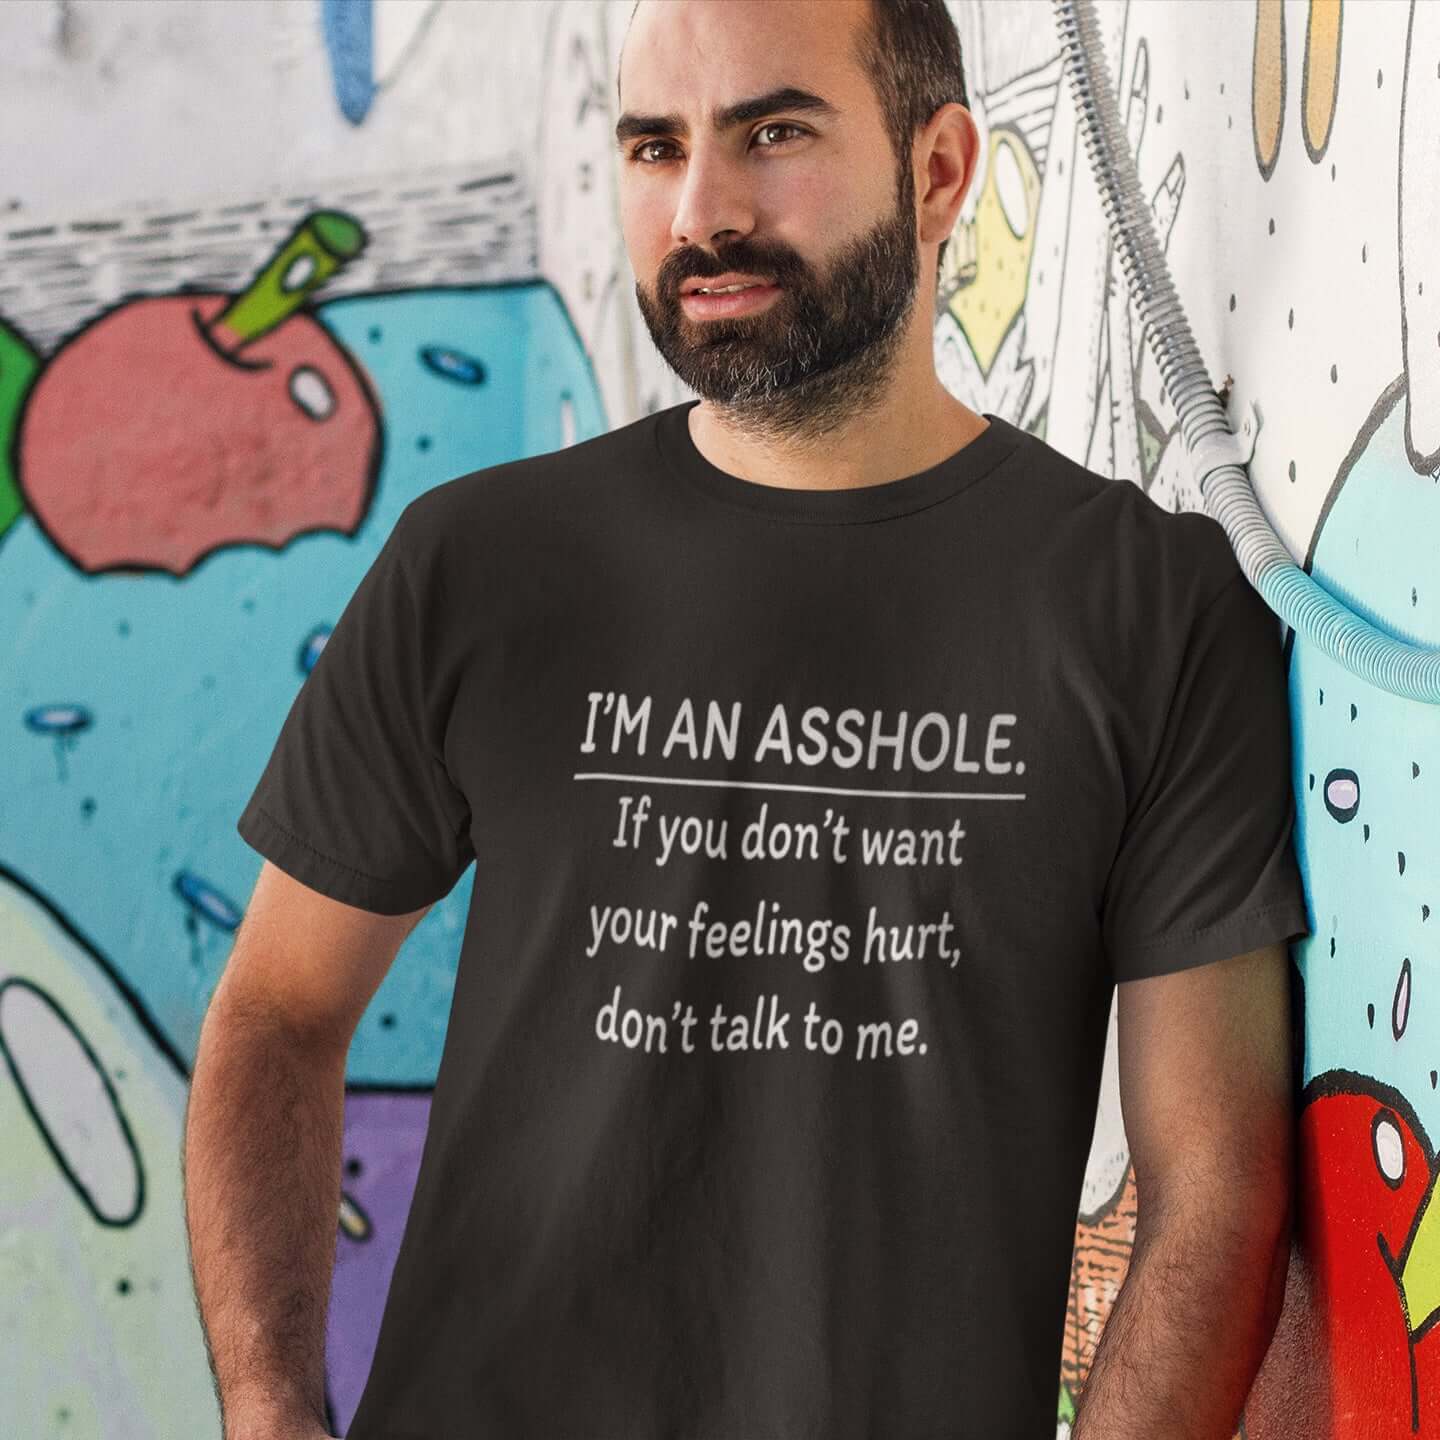 I'm an asshole T-Shirt